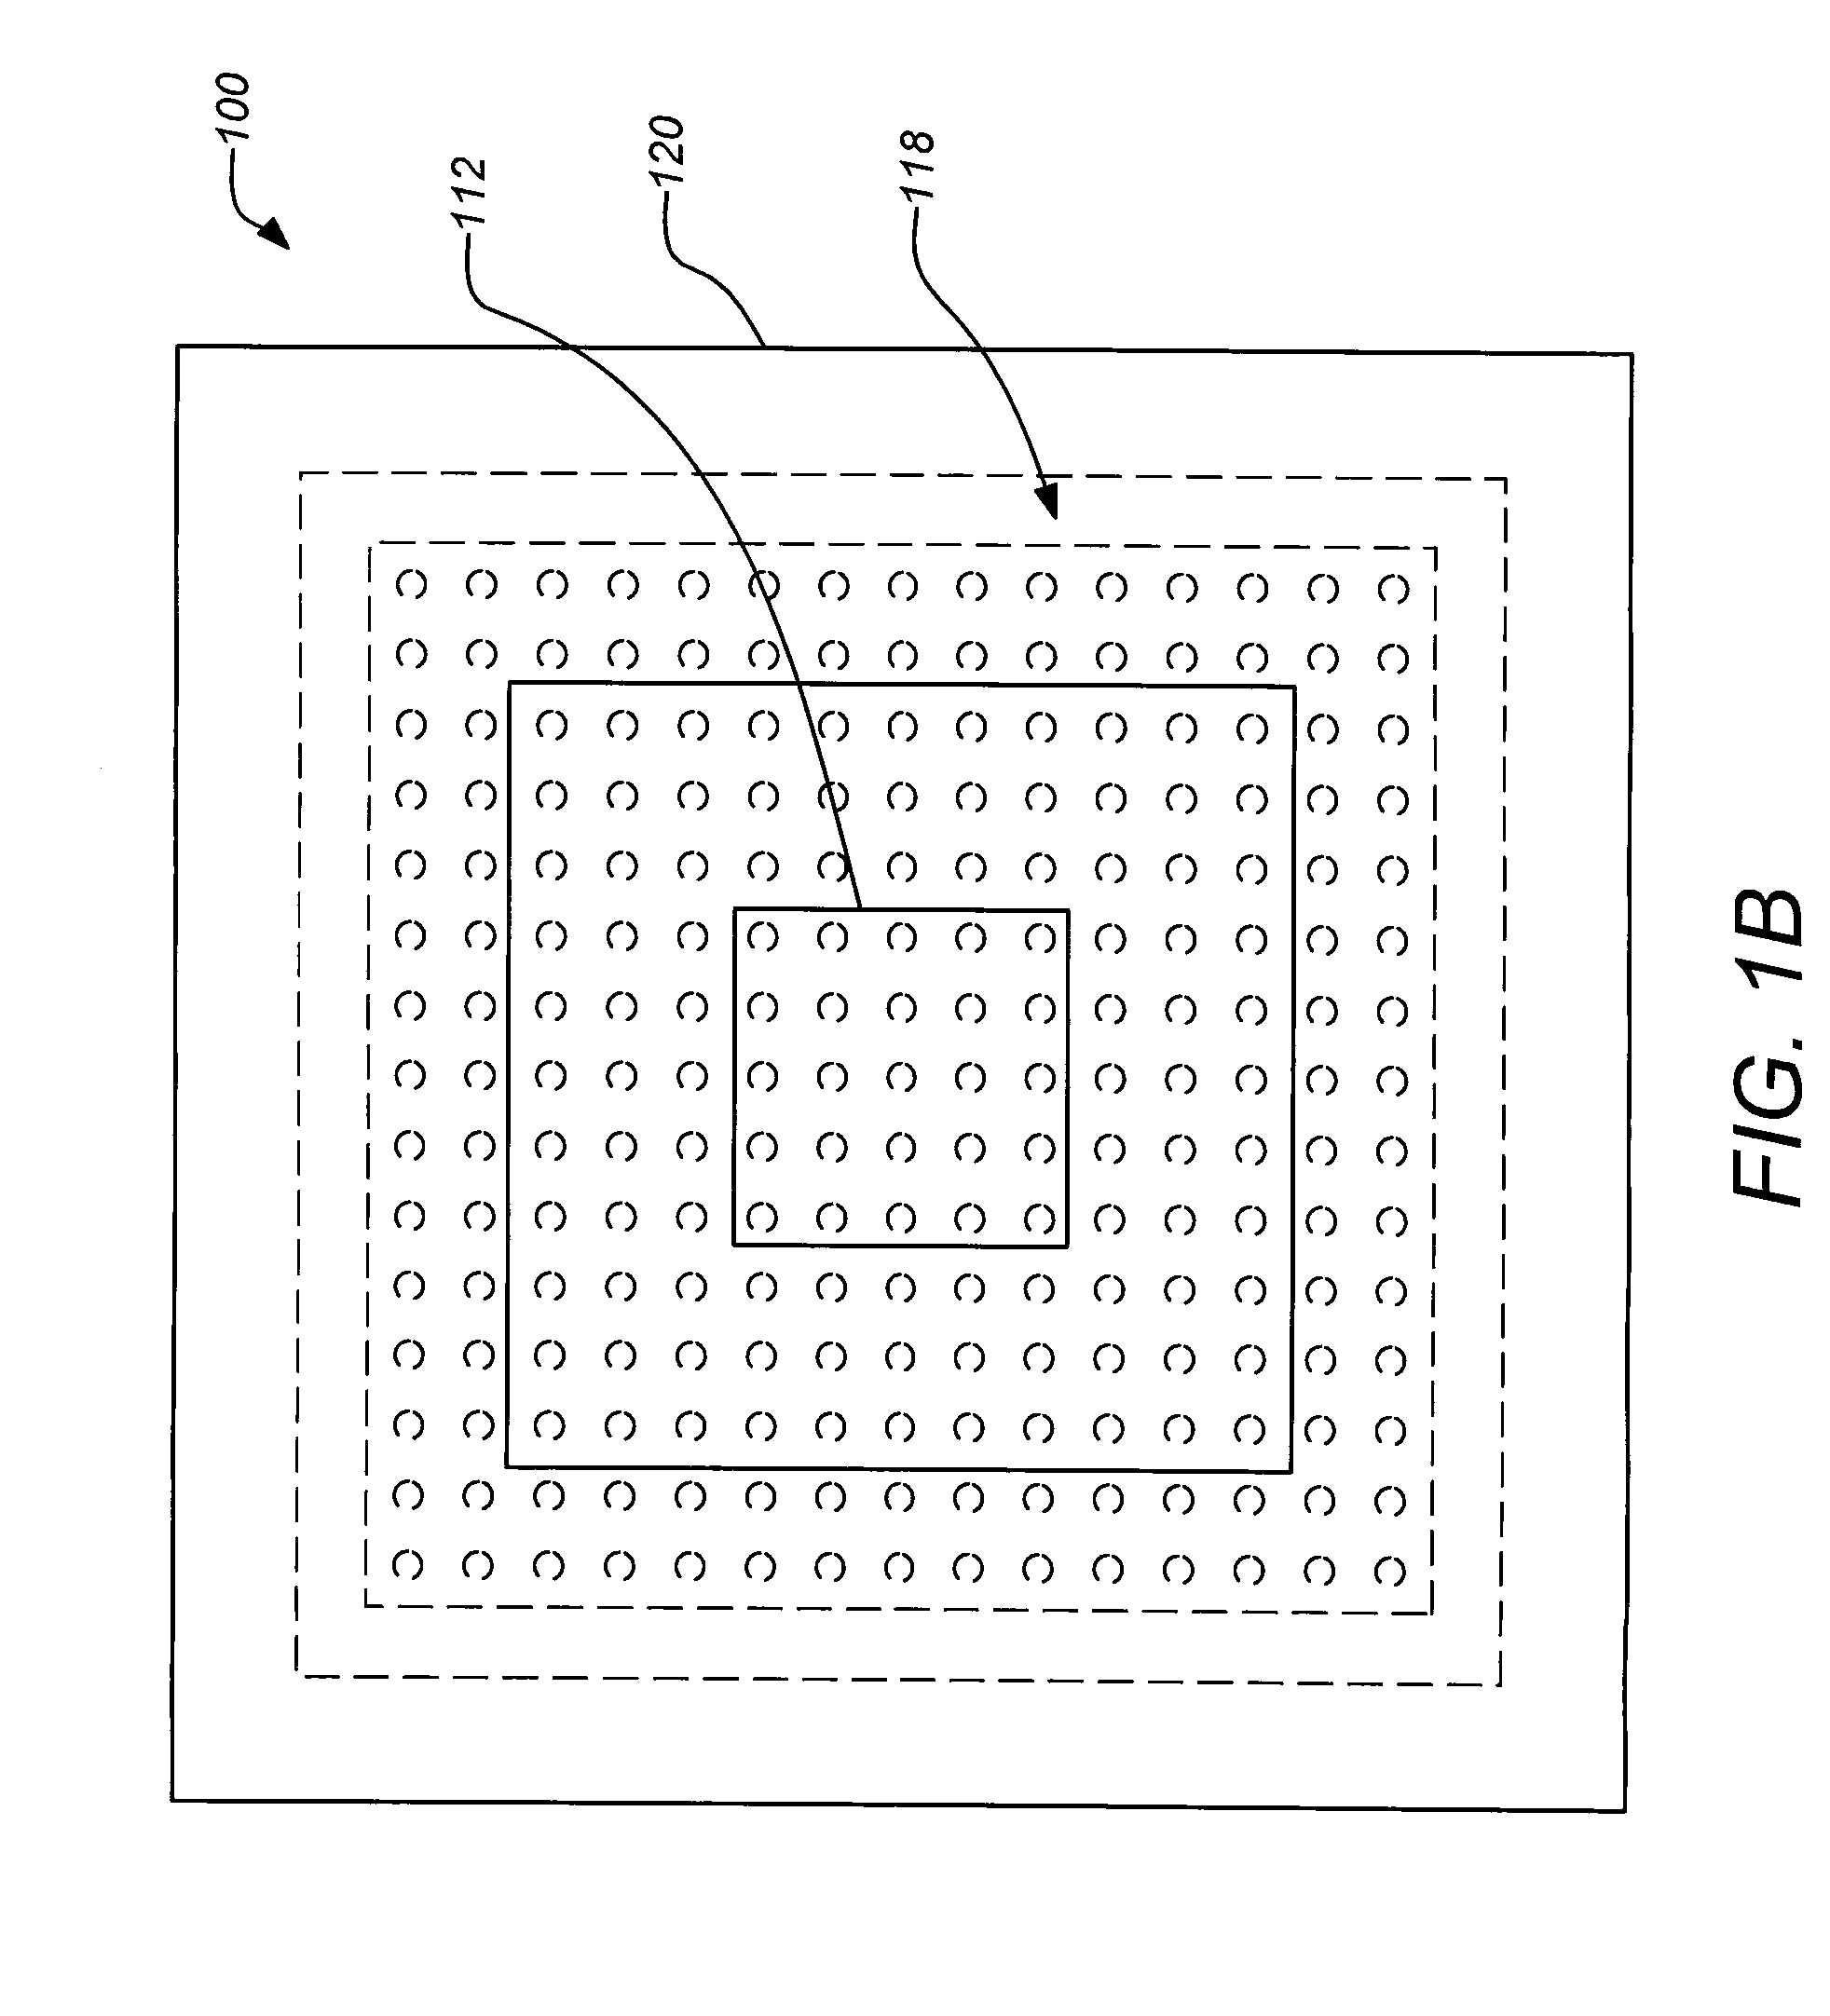 Encapsulated multi-phase electronics heat sink